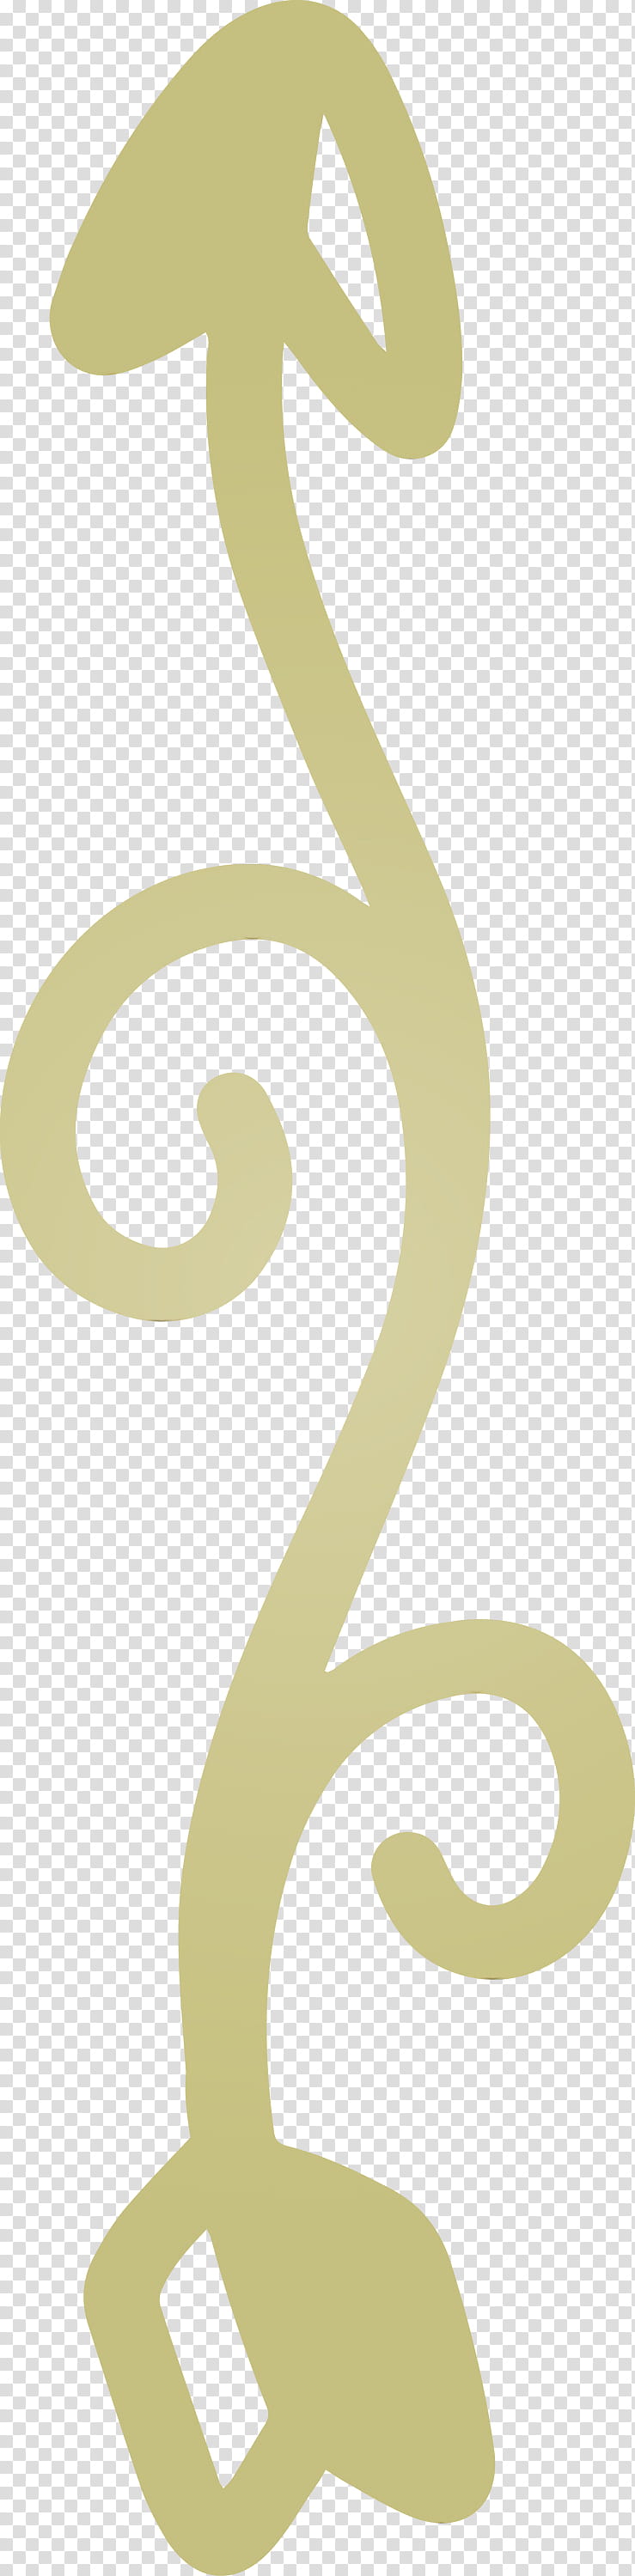 font line symbol logo number, Boho Arrow, Cute Arrow, Watercolor, Paint, Wet Ink transparent background PNG clipart